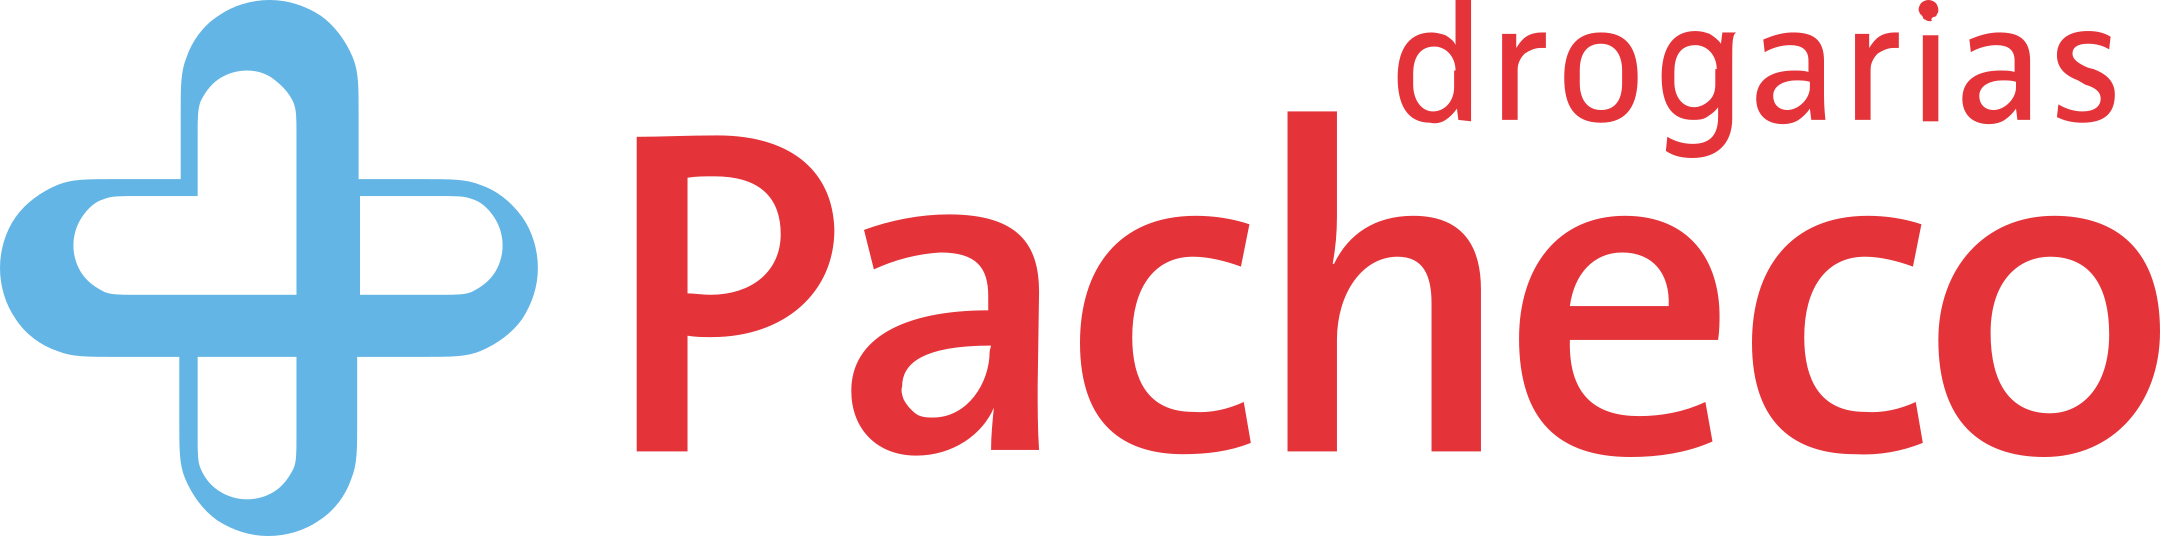 Drogarias Pacheco Logo.